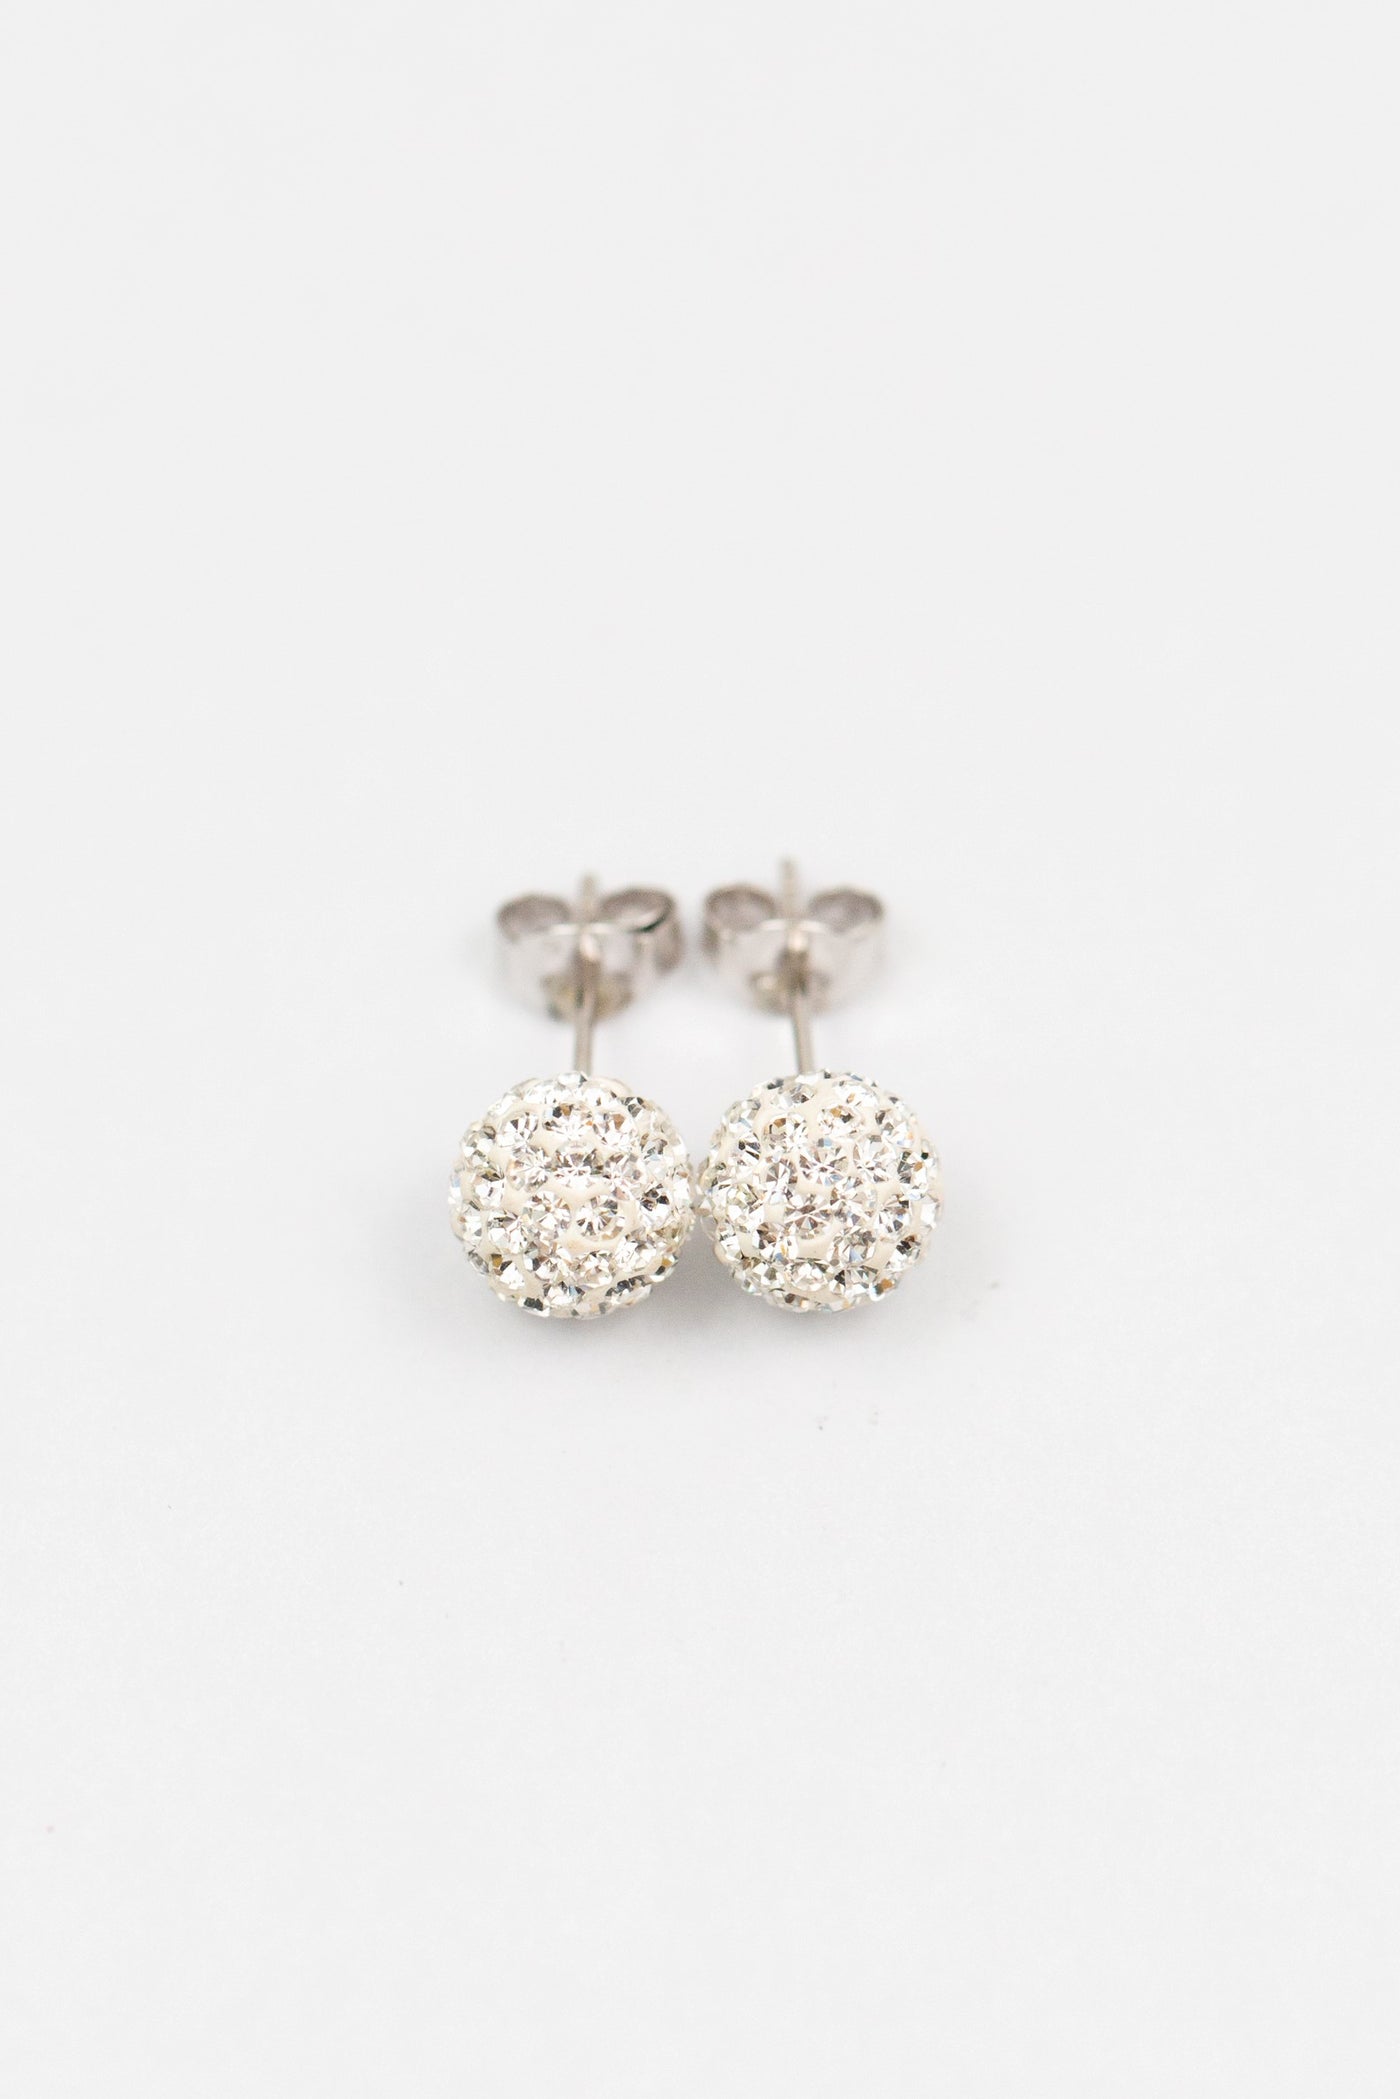 August Birthstone Huggie Hoop Earrings Made With Swarovski® Crystals